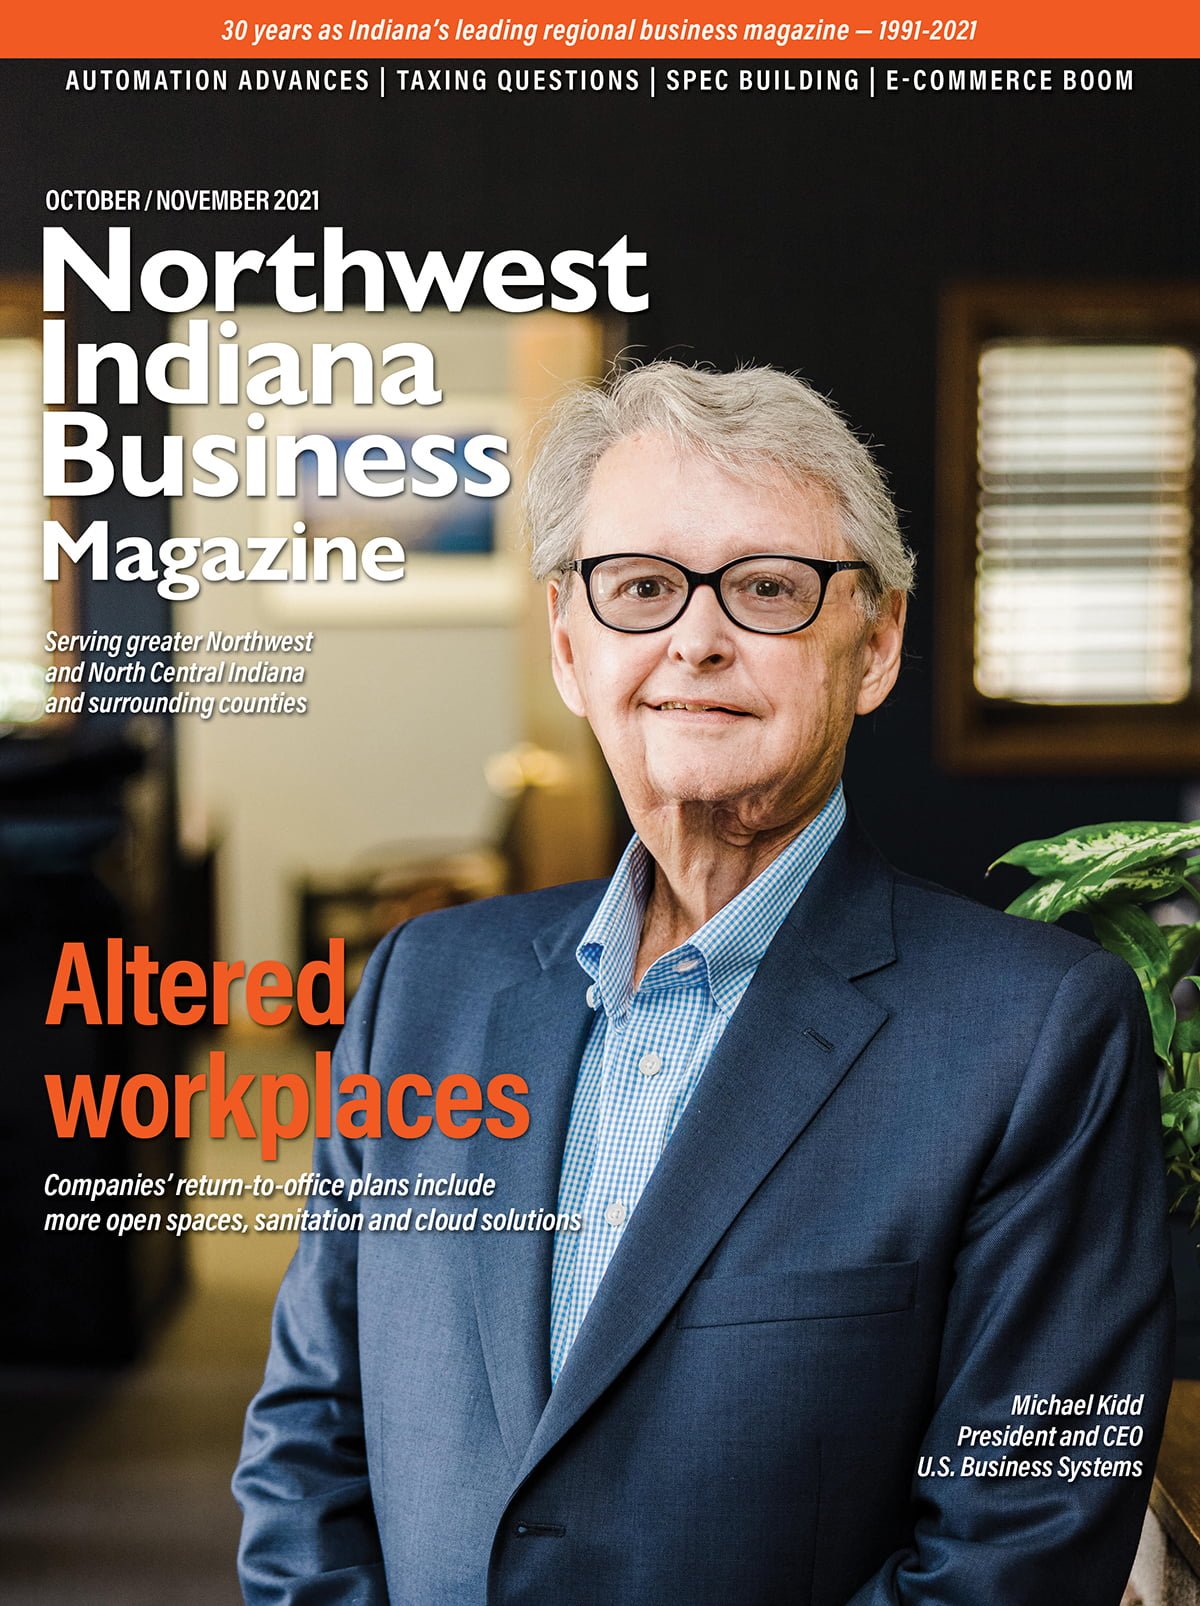 Northwest Indiana Business Magazine Oct-Nov 2021 issue